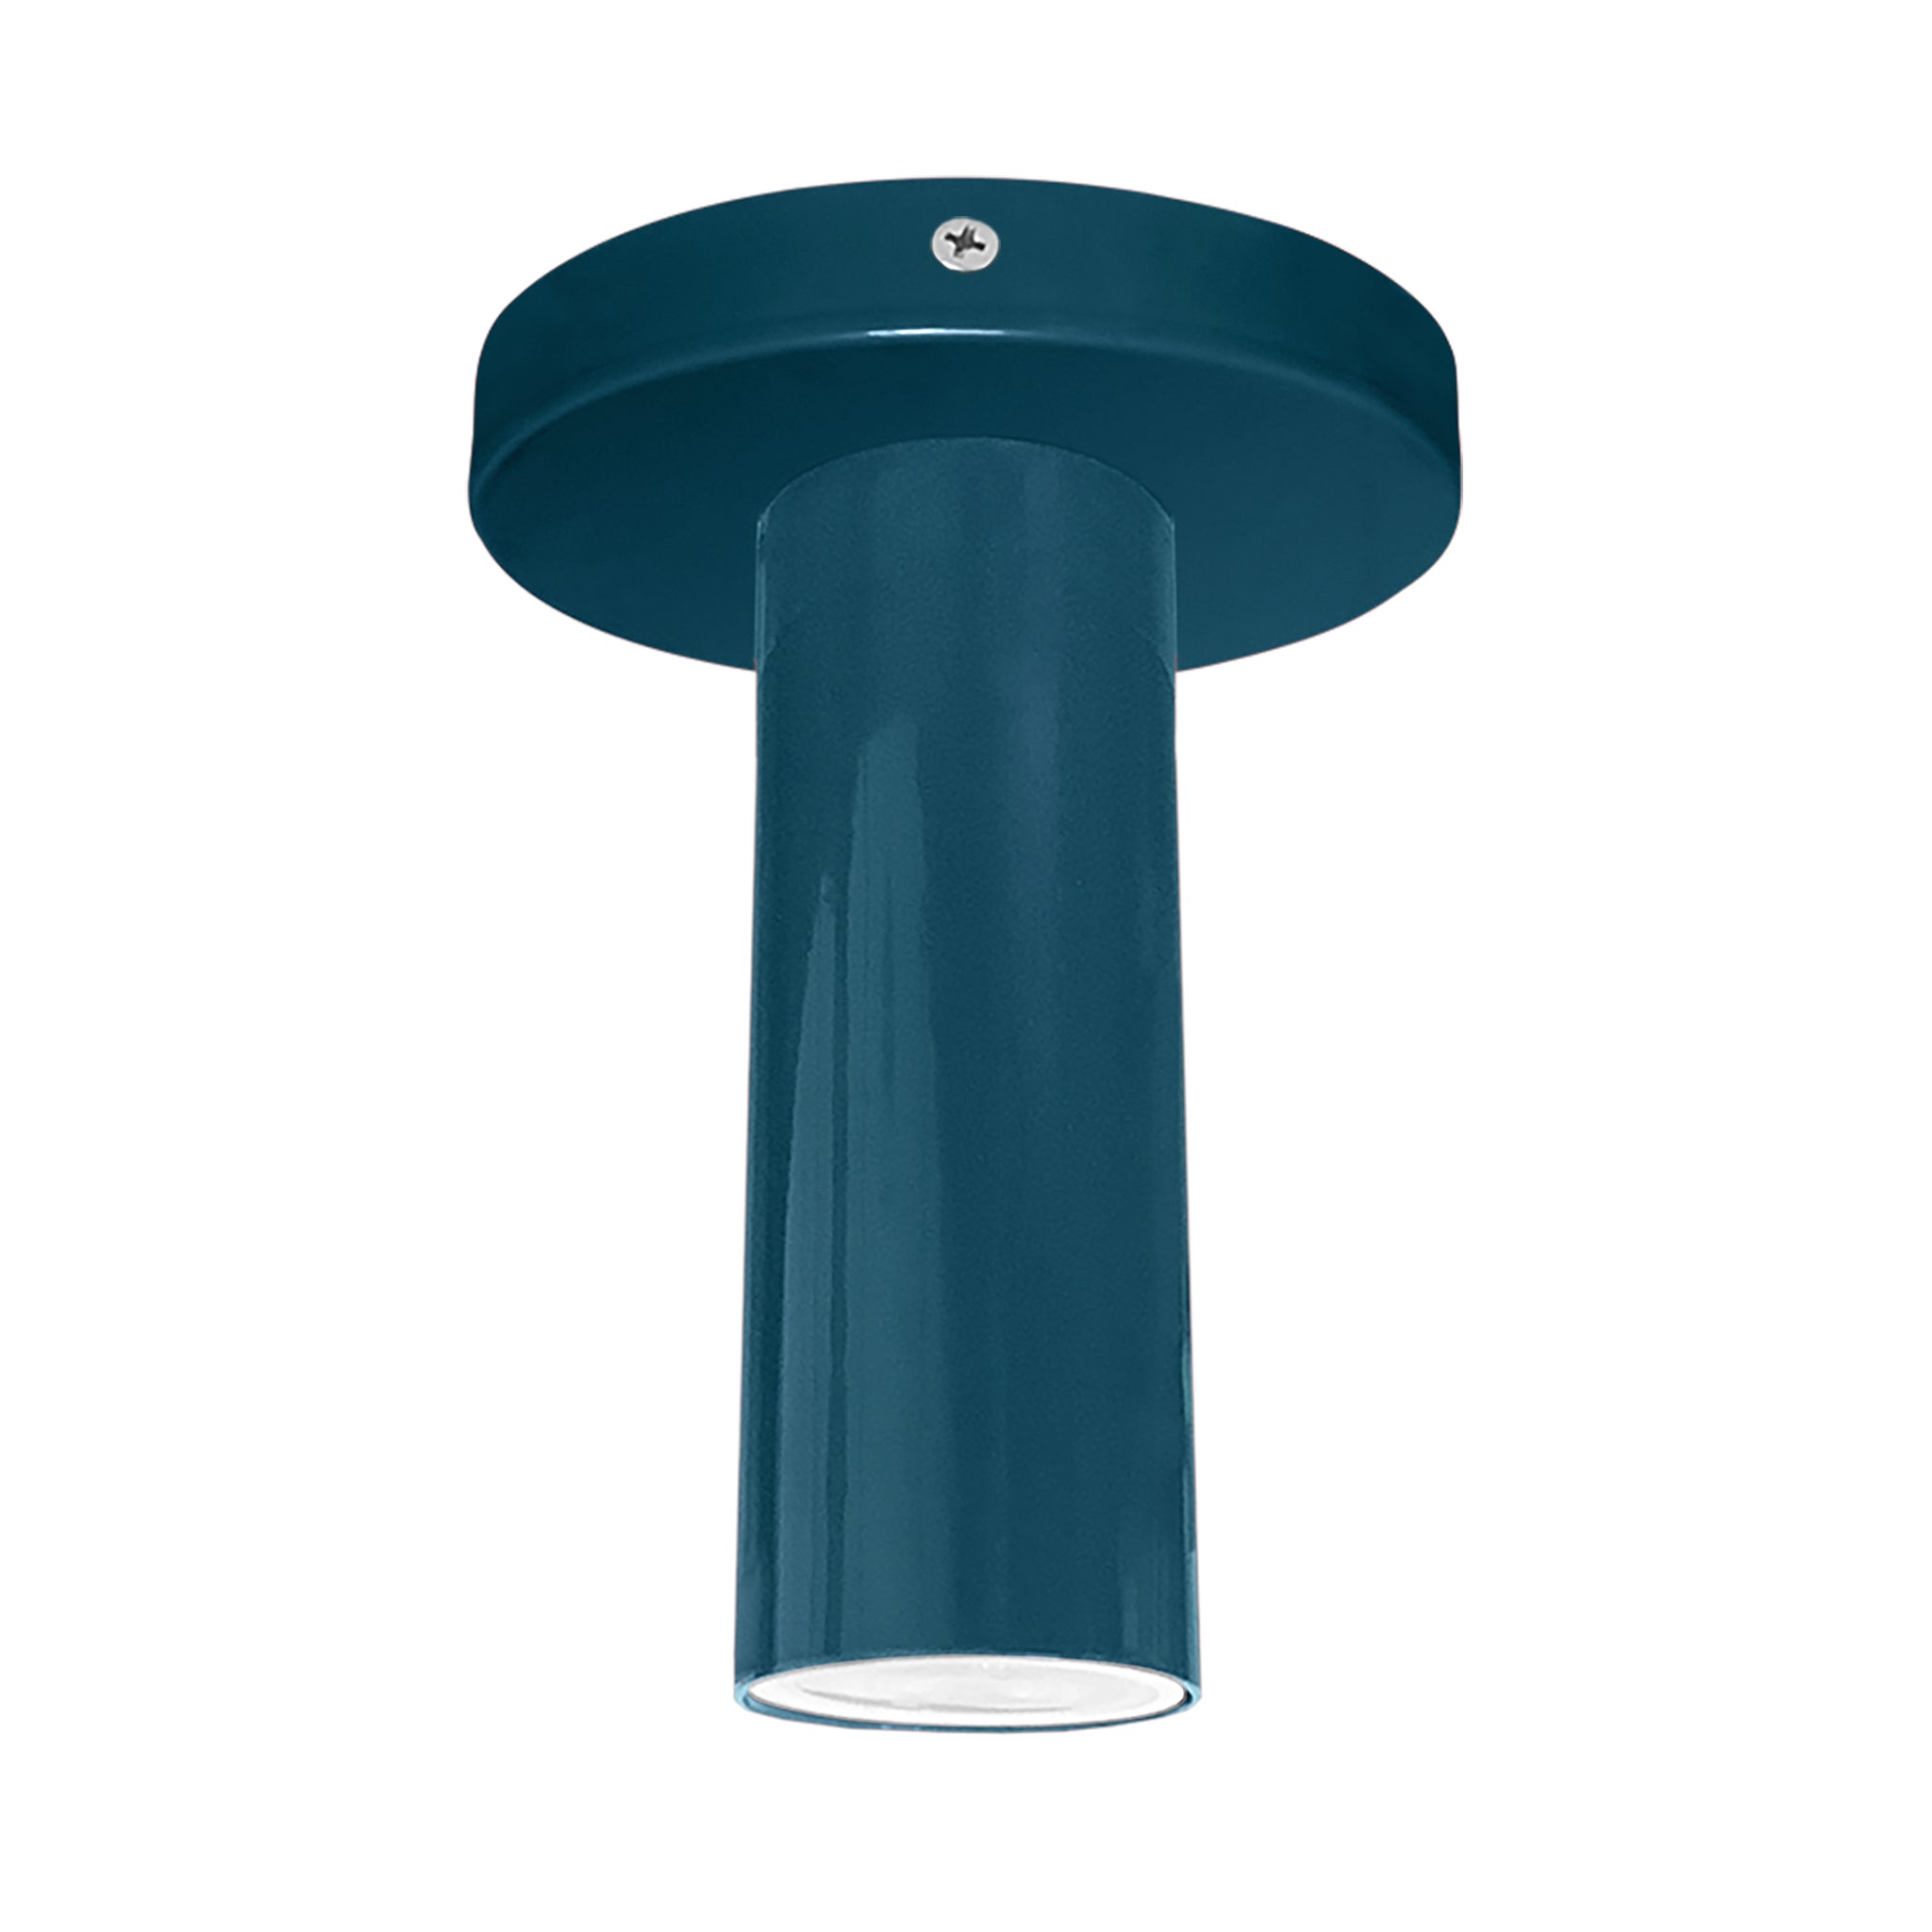 Nickel and slate blue color Reader flush mount Dutton Brown lighting